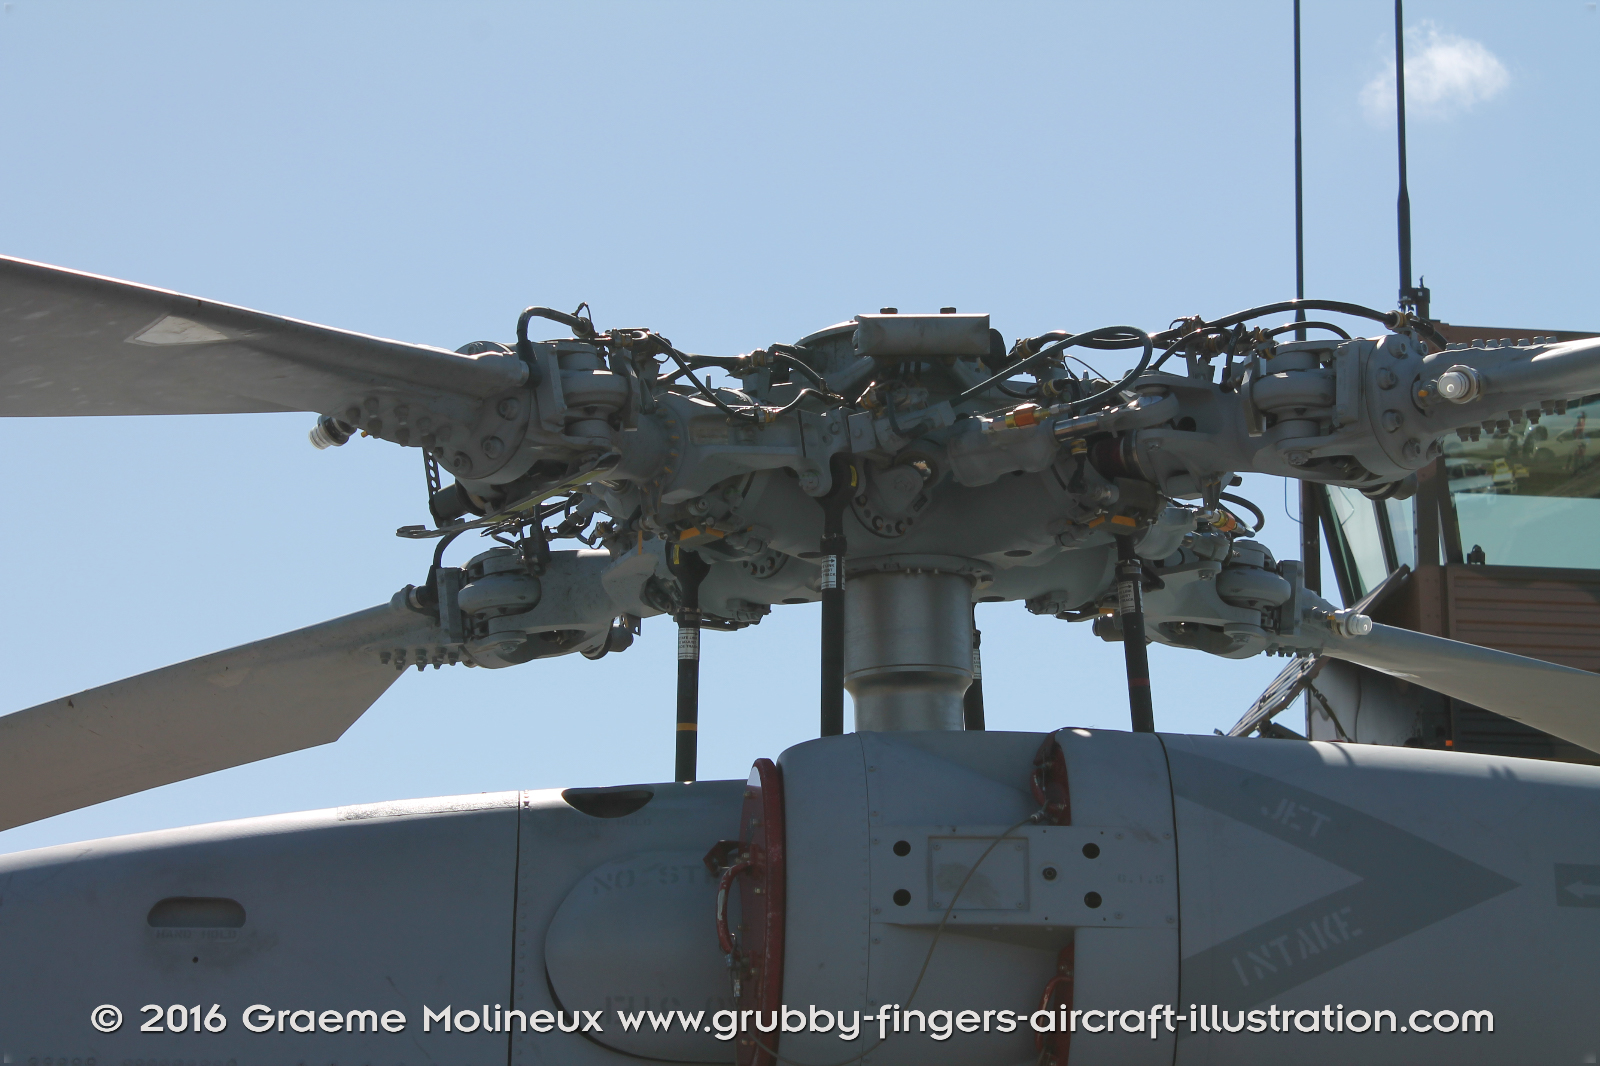 SIKORSKY_MH-60R_Seahawk_N48-005_Avalon_2015_62_GrubbyFingers